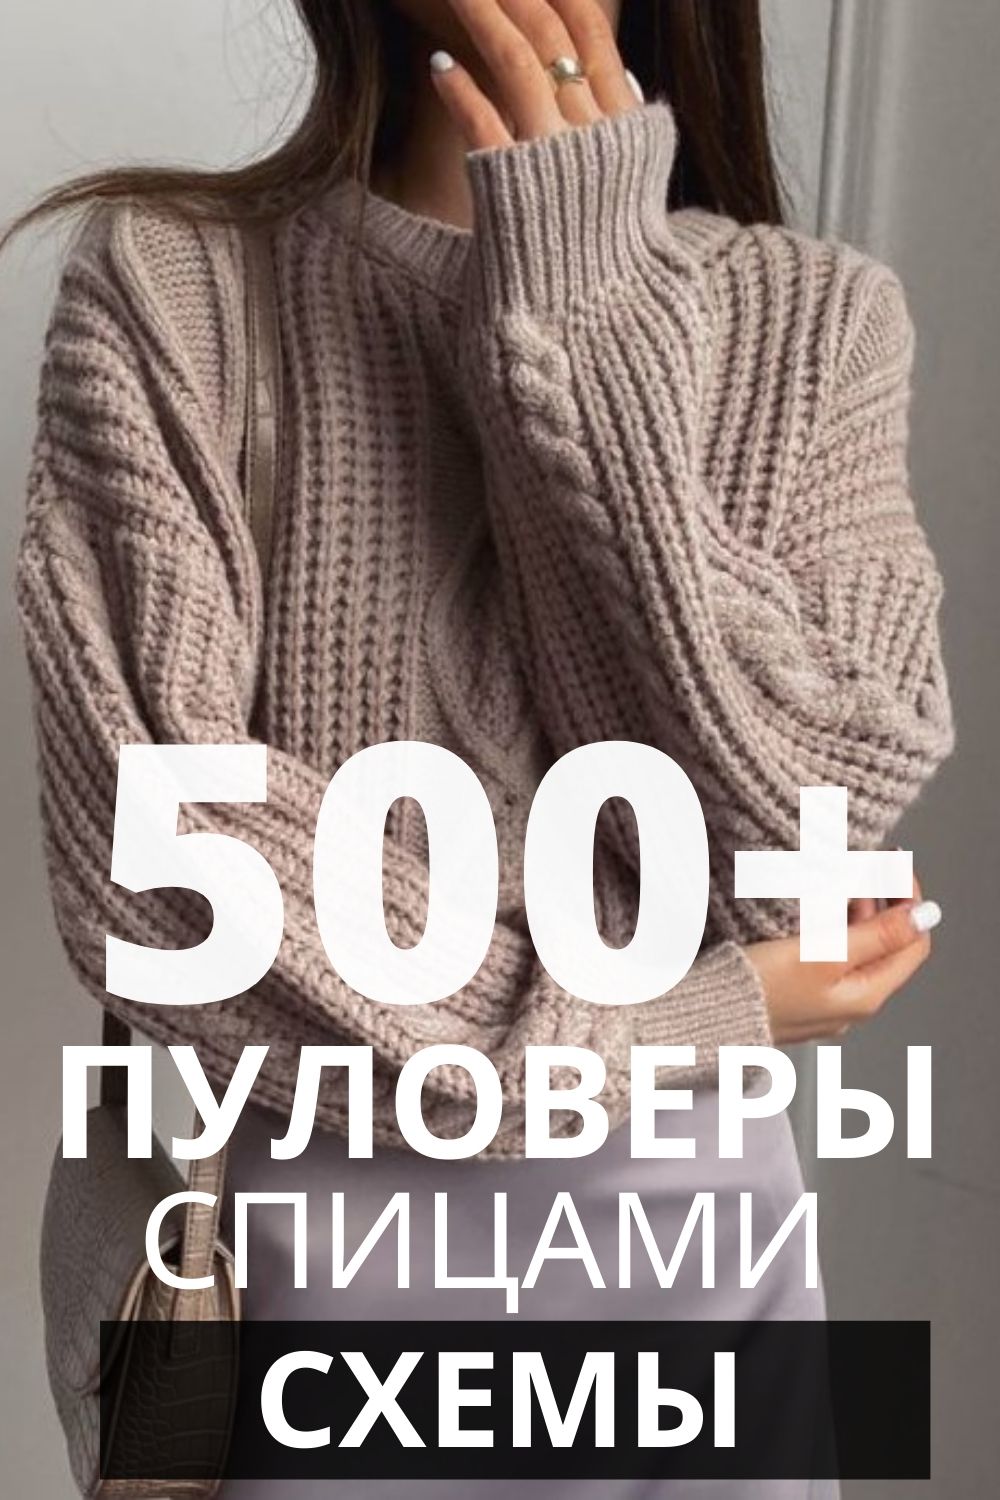 Вязаные жилеты (вязание спицами) | Изделия ручной работы на aikimaster.ru